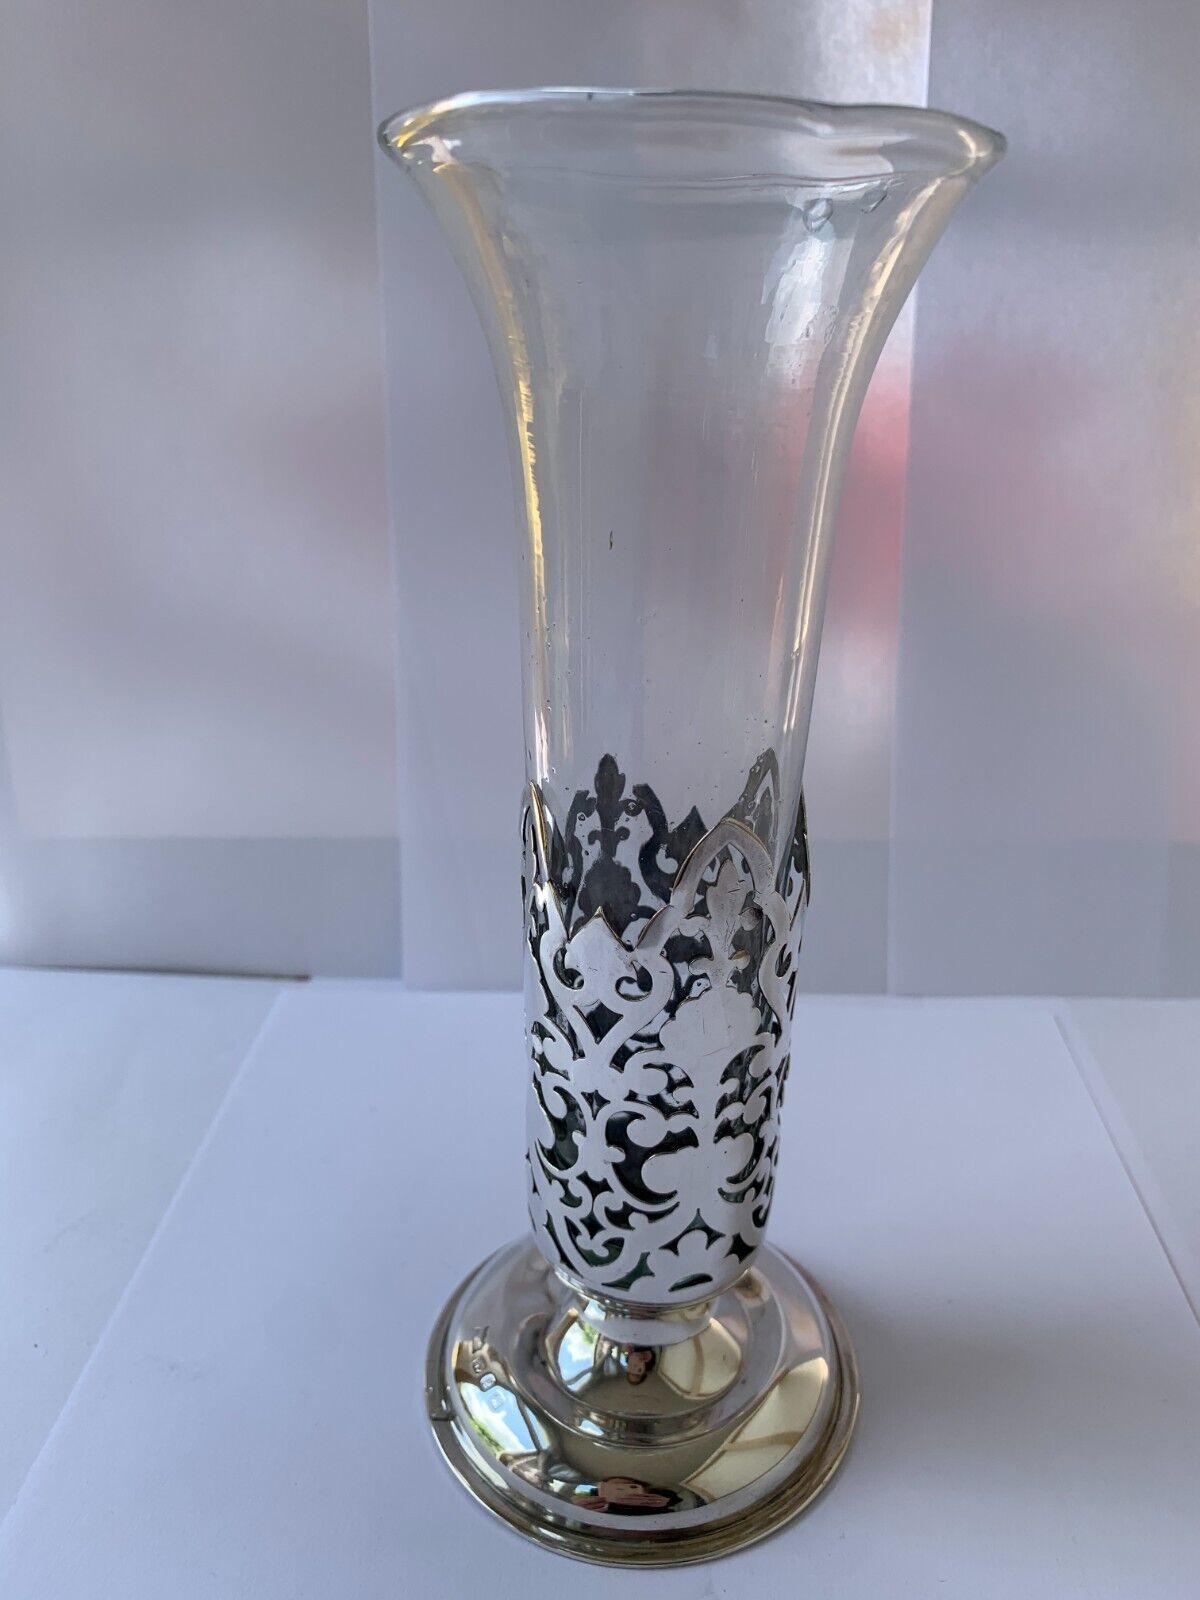 Dies ist eine schöne durchbrochene Sterling Silber Vase mit einem runden Sockel Basis ist in gutem Vintage-Zustand. Es hat ein schönes Design, leider fehlt ein kleines Stück des Silbers, dies spiegelt sich im Preis wieder.
Das Klarglas ist original